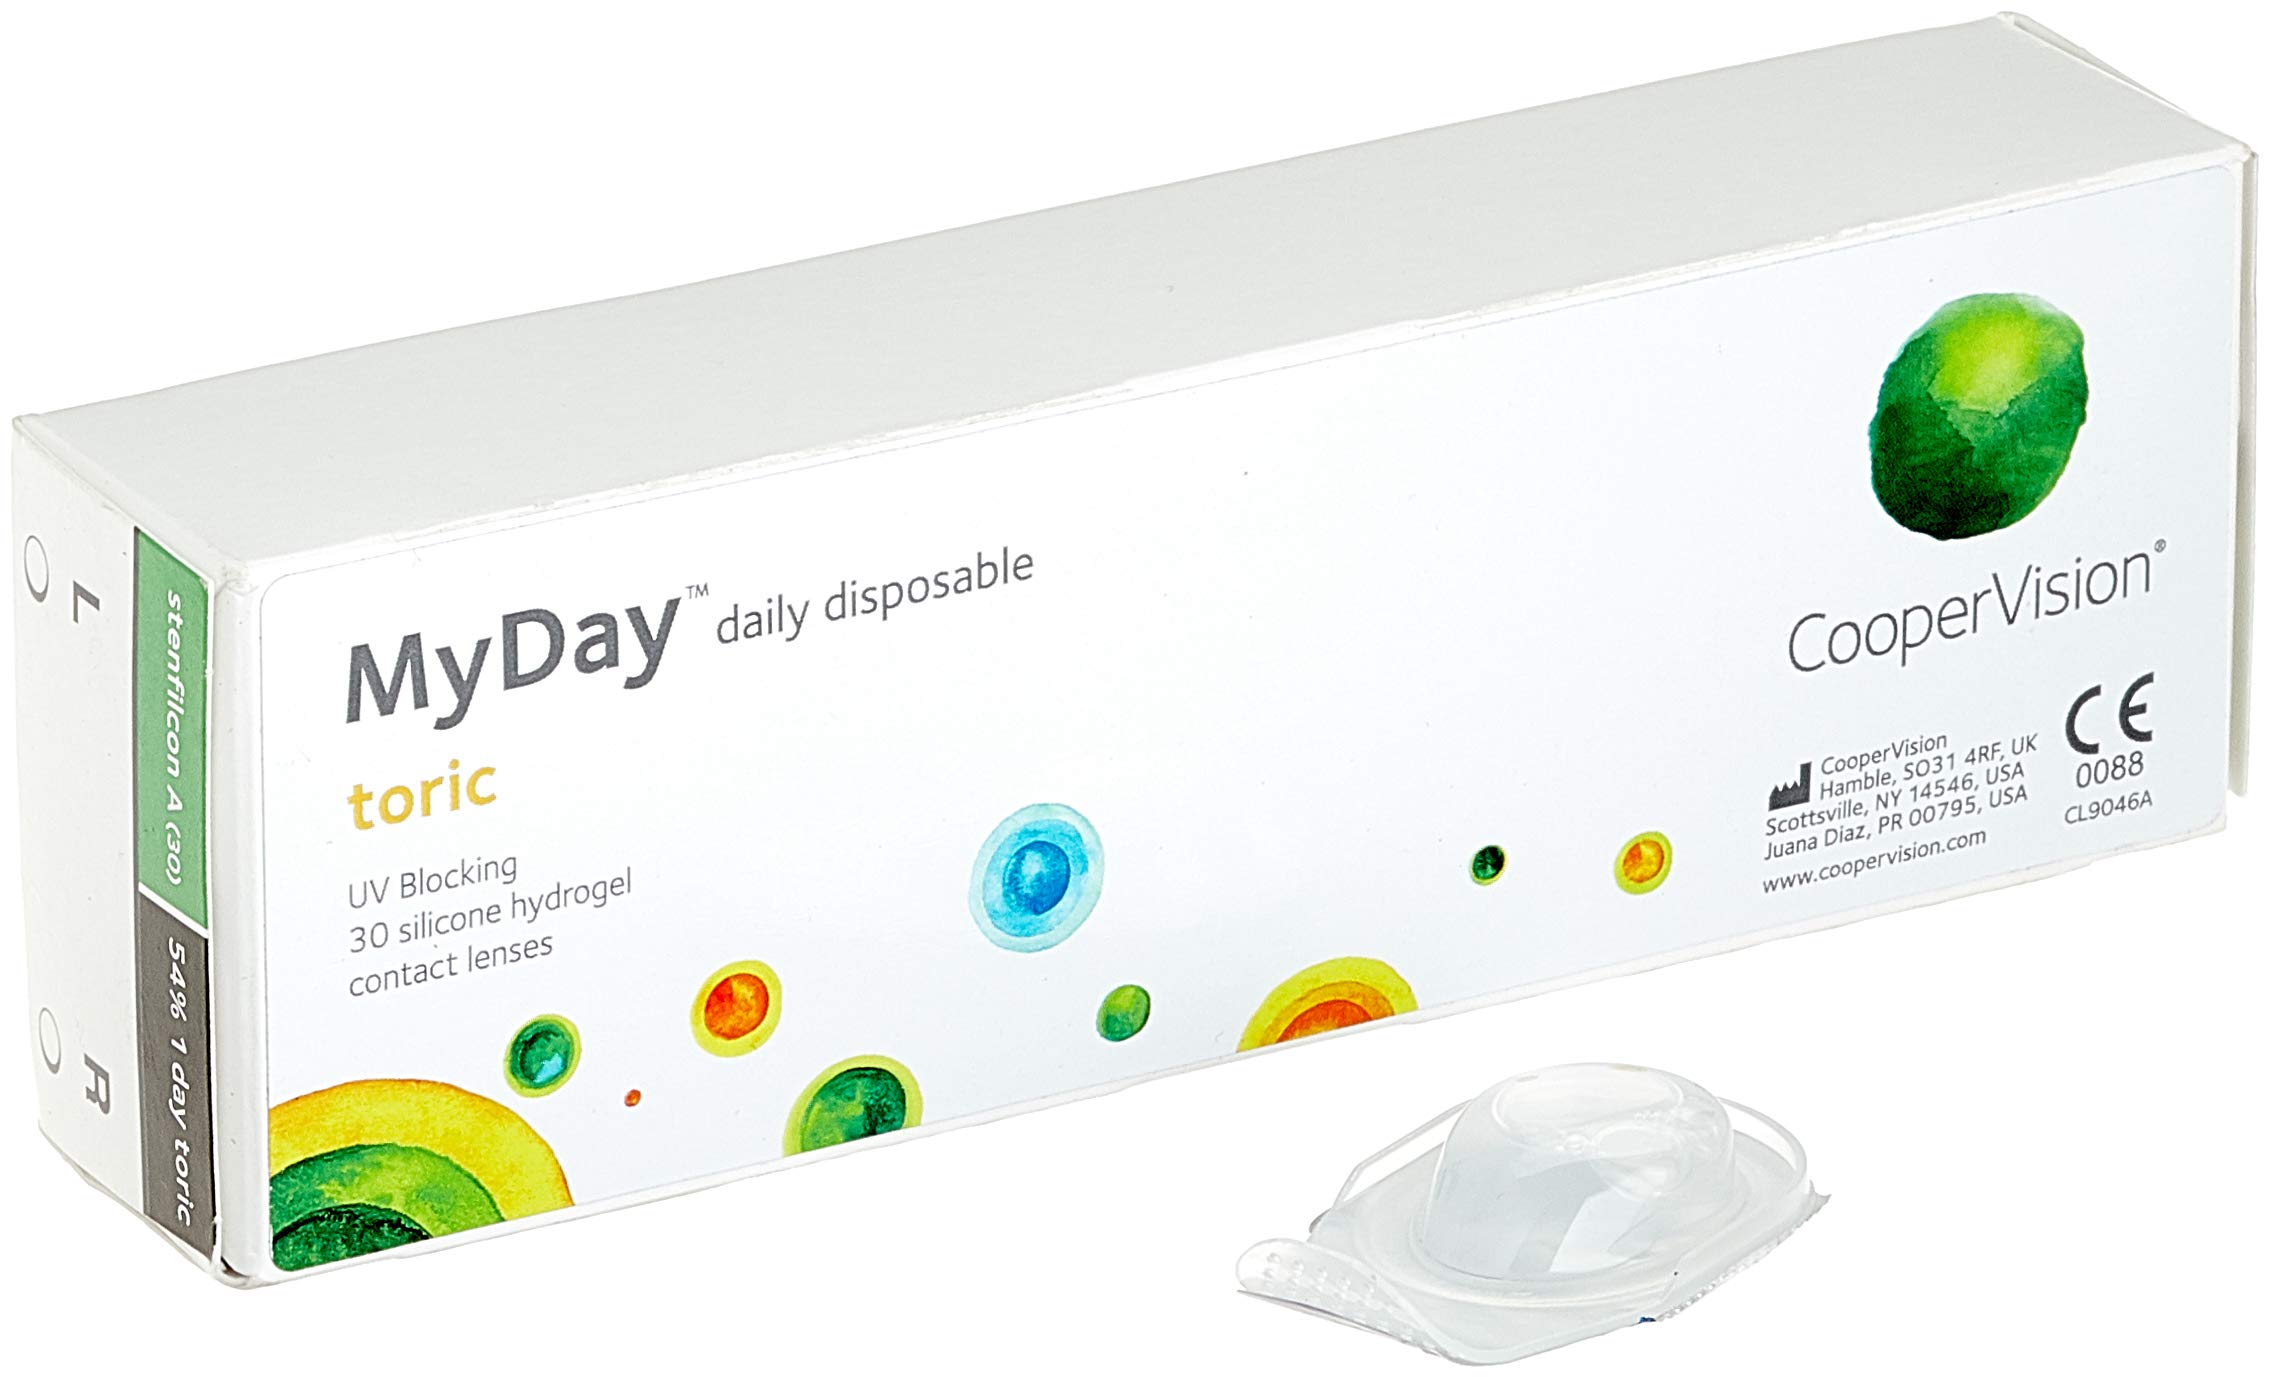 MYDAY Daily disposable Torisch Tageslinsen weich, 30 Stück / BC 8.6 mm / Dia 14.5 mm / CYL -0,75 / ACHSE 160 / 0 Dioptrien